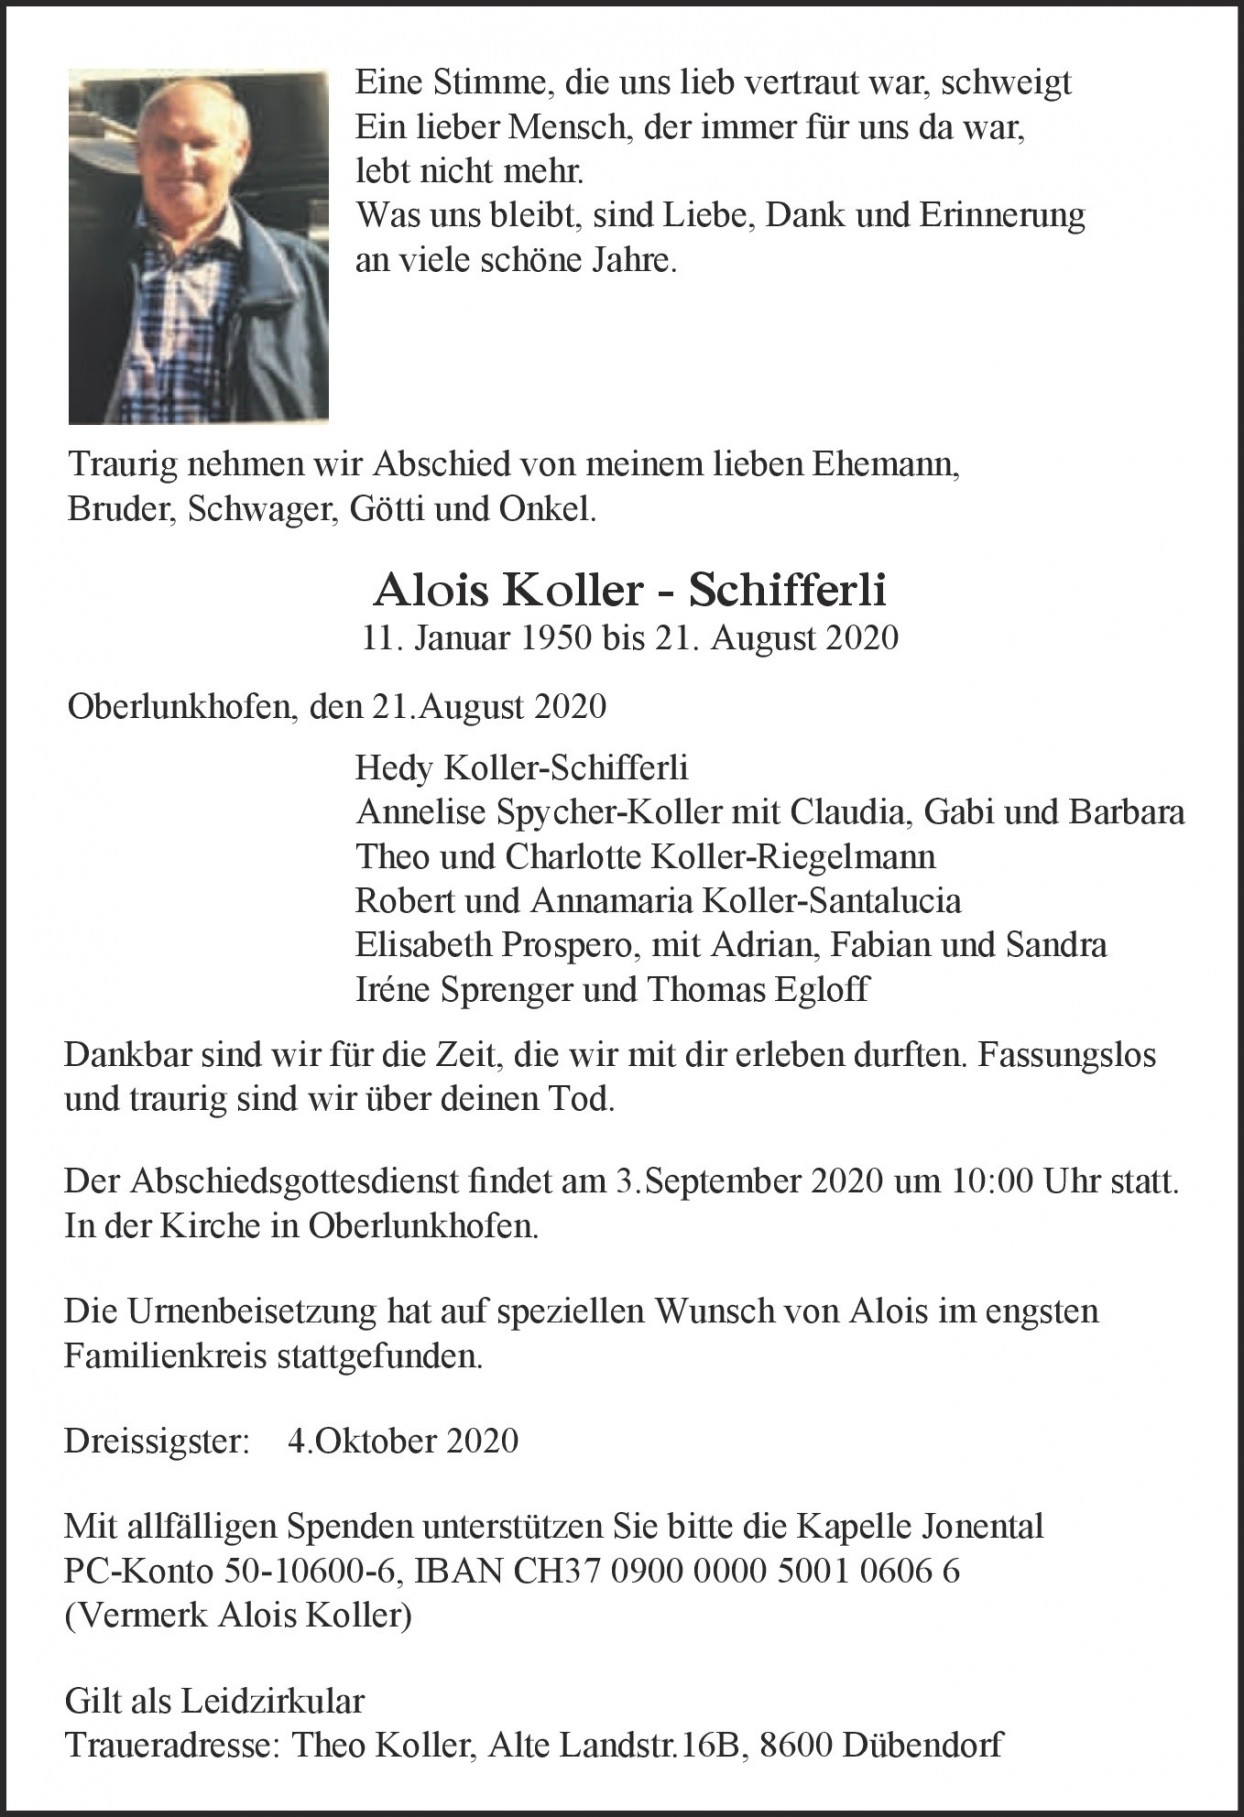 Alois Koller-Schifferli